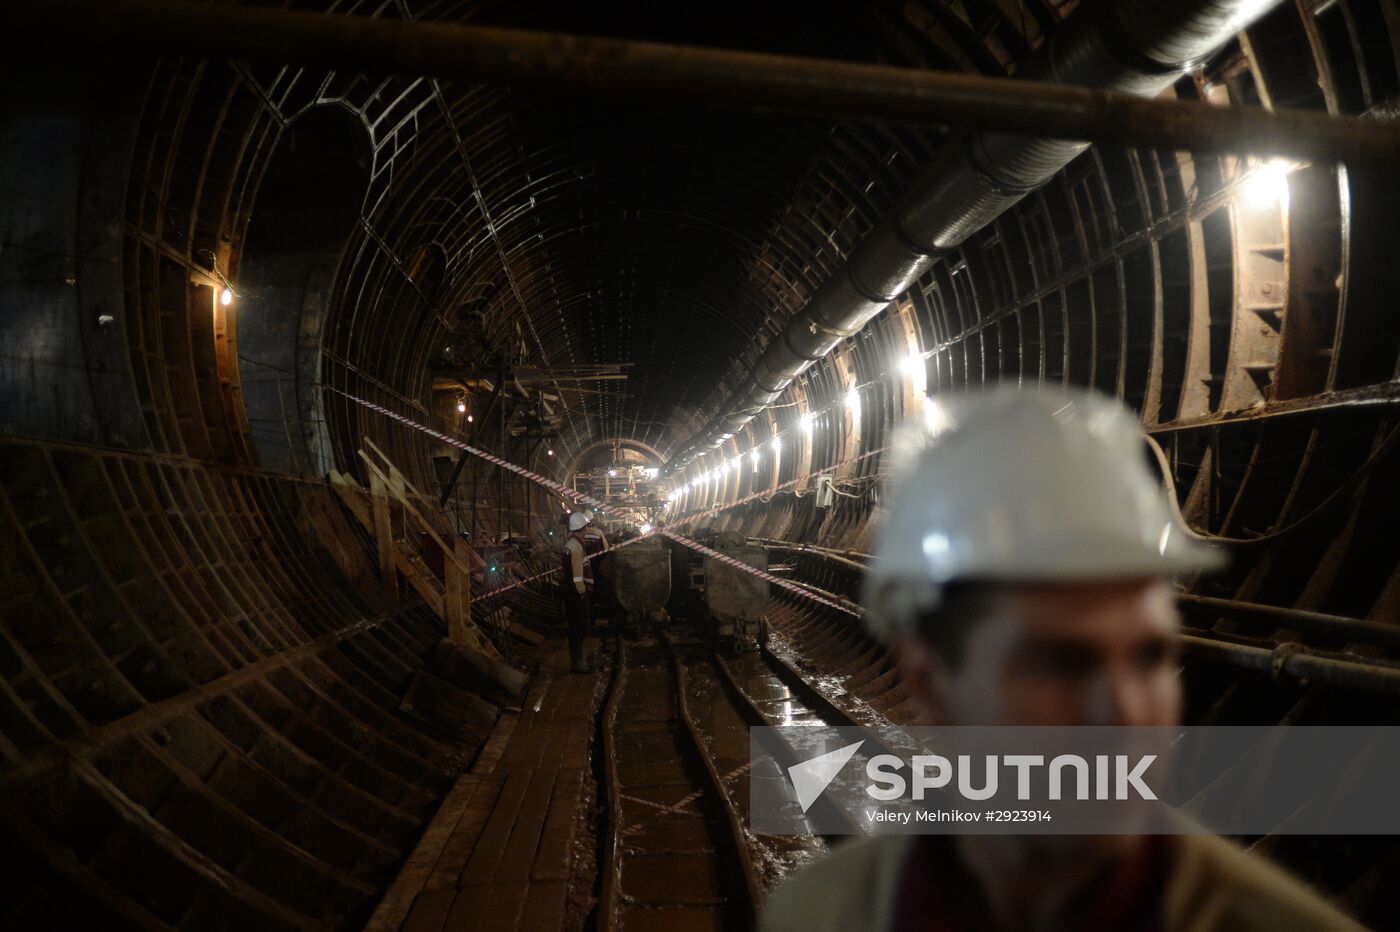 Okruzhnaya metro station under construction in Moscow